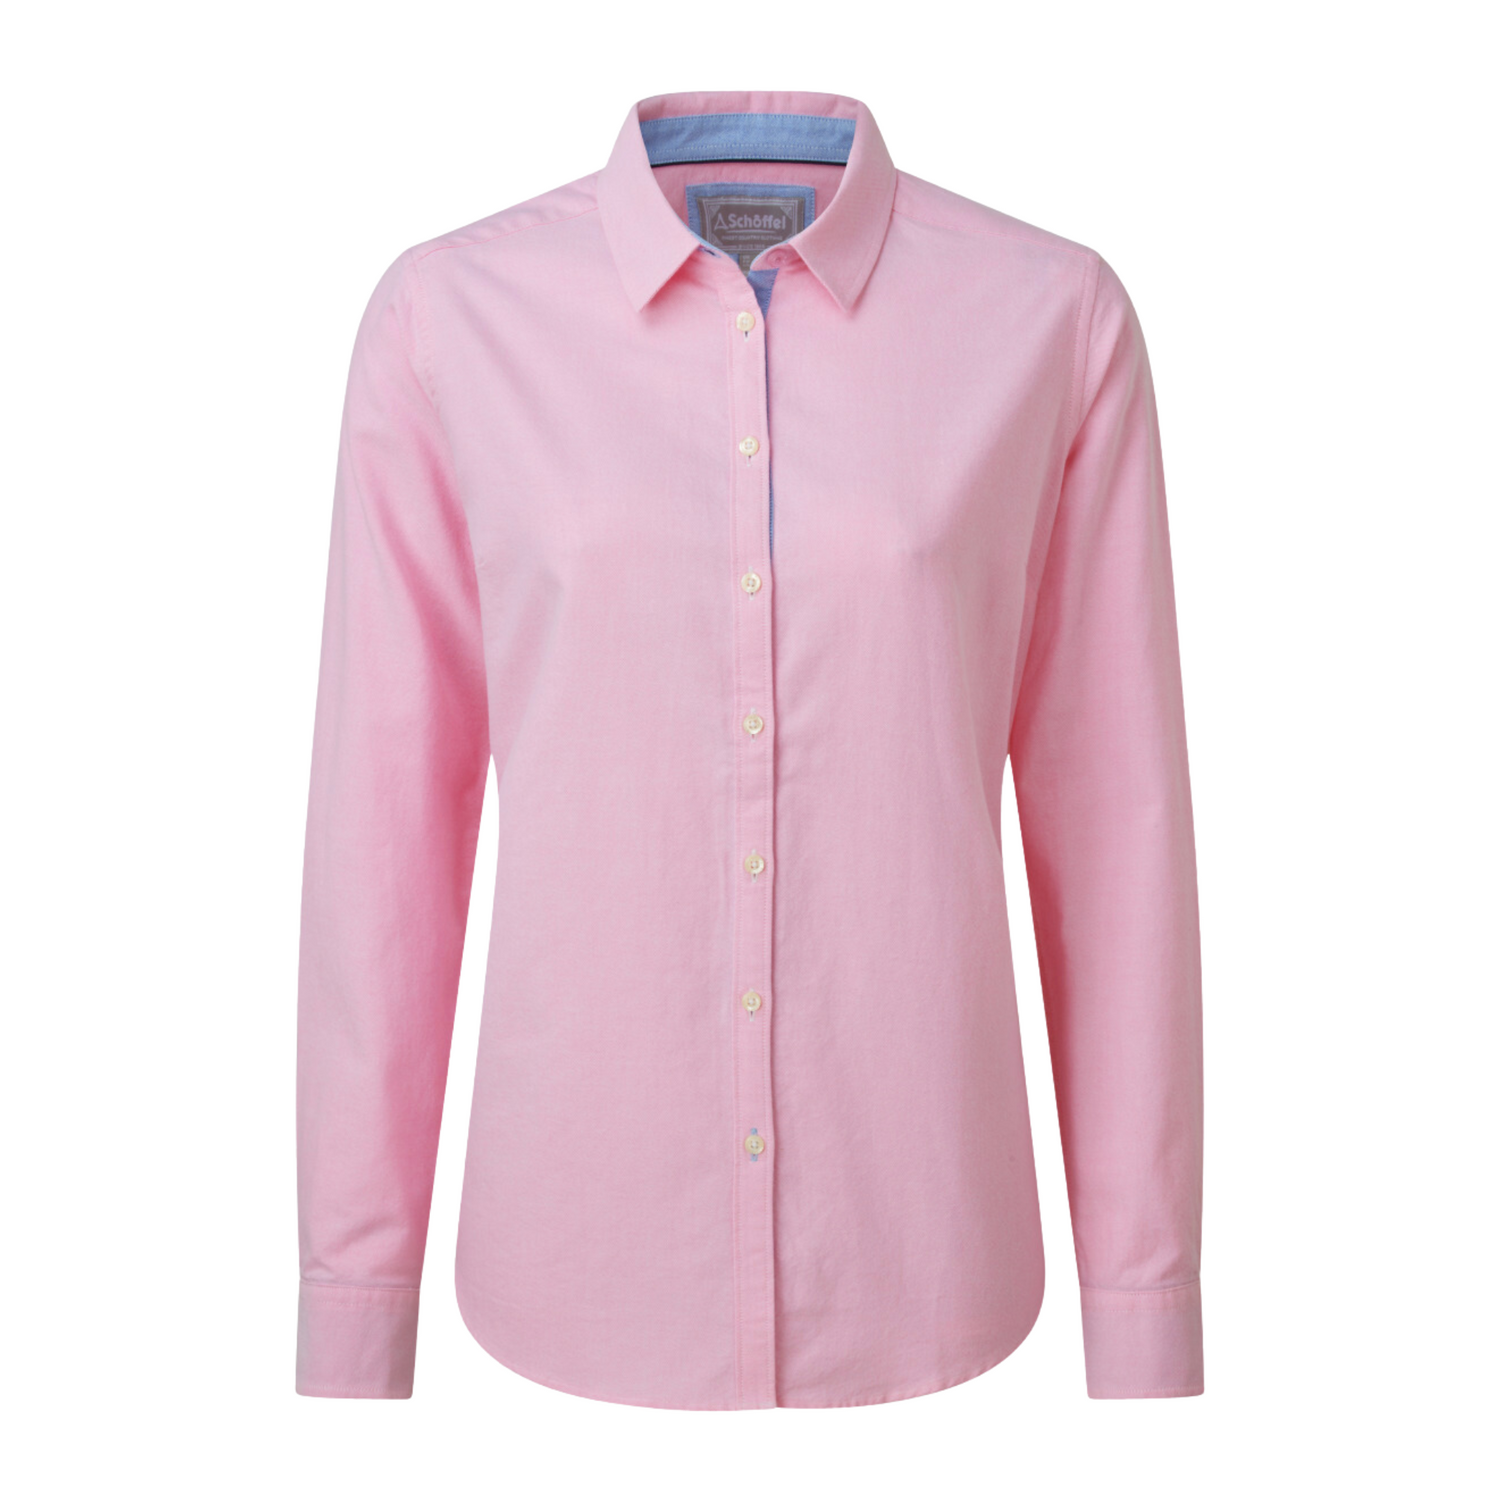 Cley Soft Oxford Shirt Light Pink